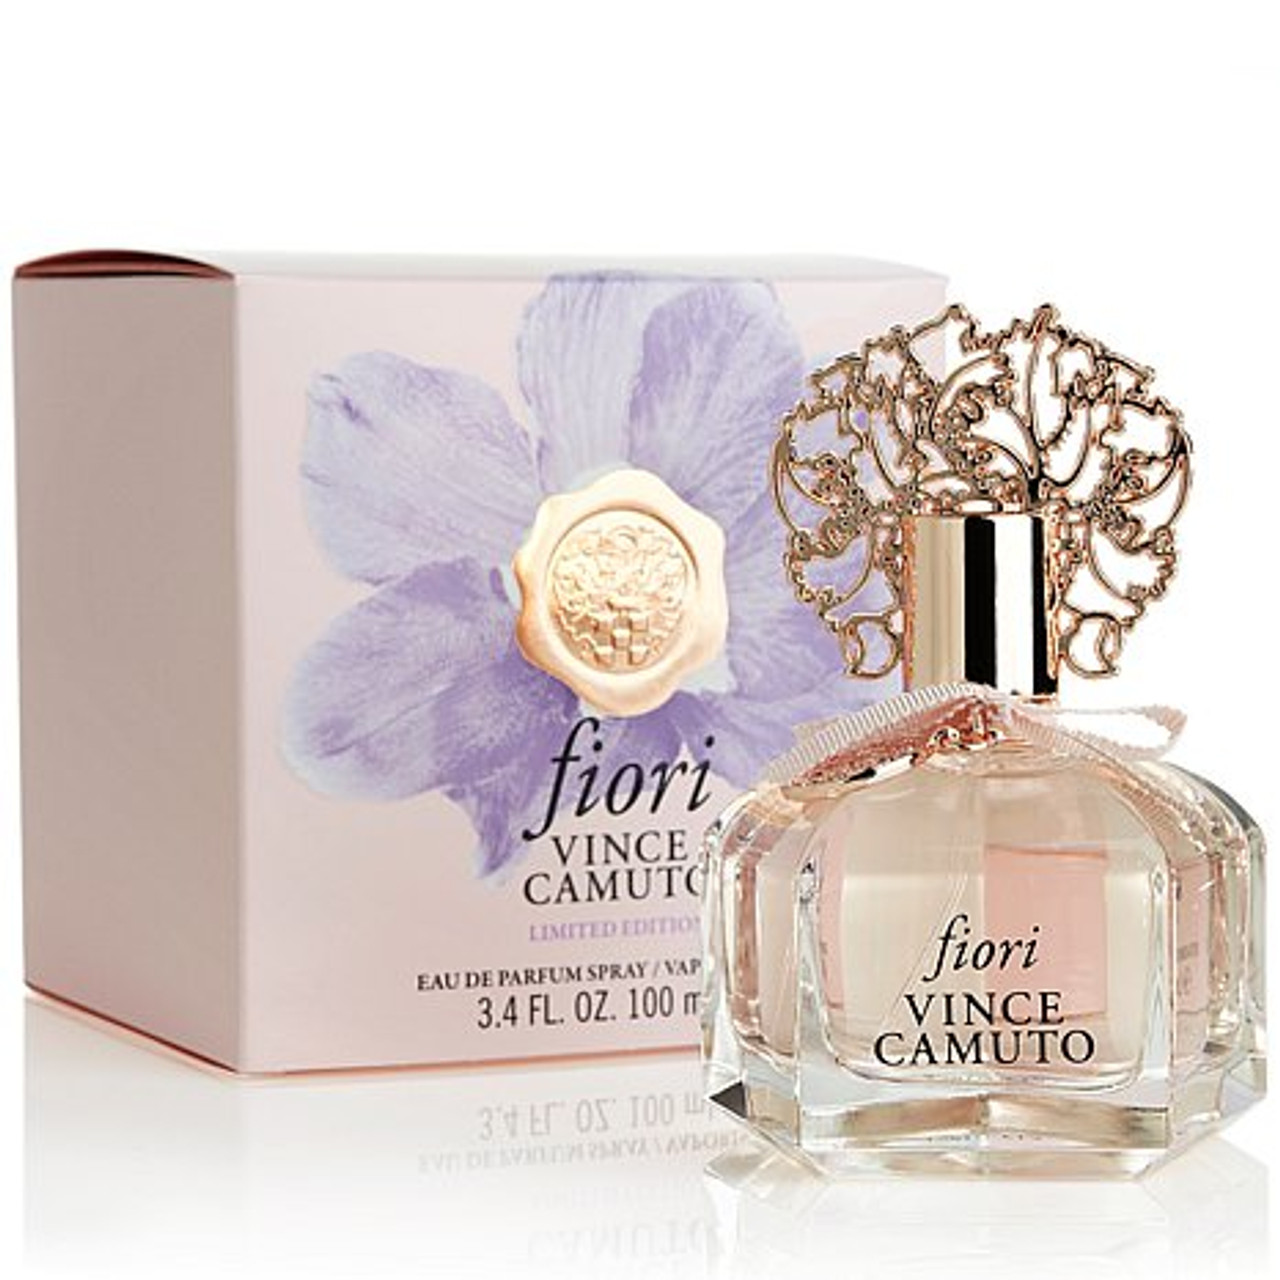 Vince Camuto Floreale Eau de Parfum Spray Perfume for Women- Bergamont,  Orchid & Vanilla